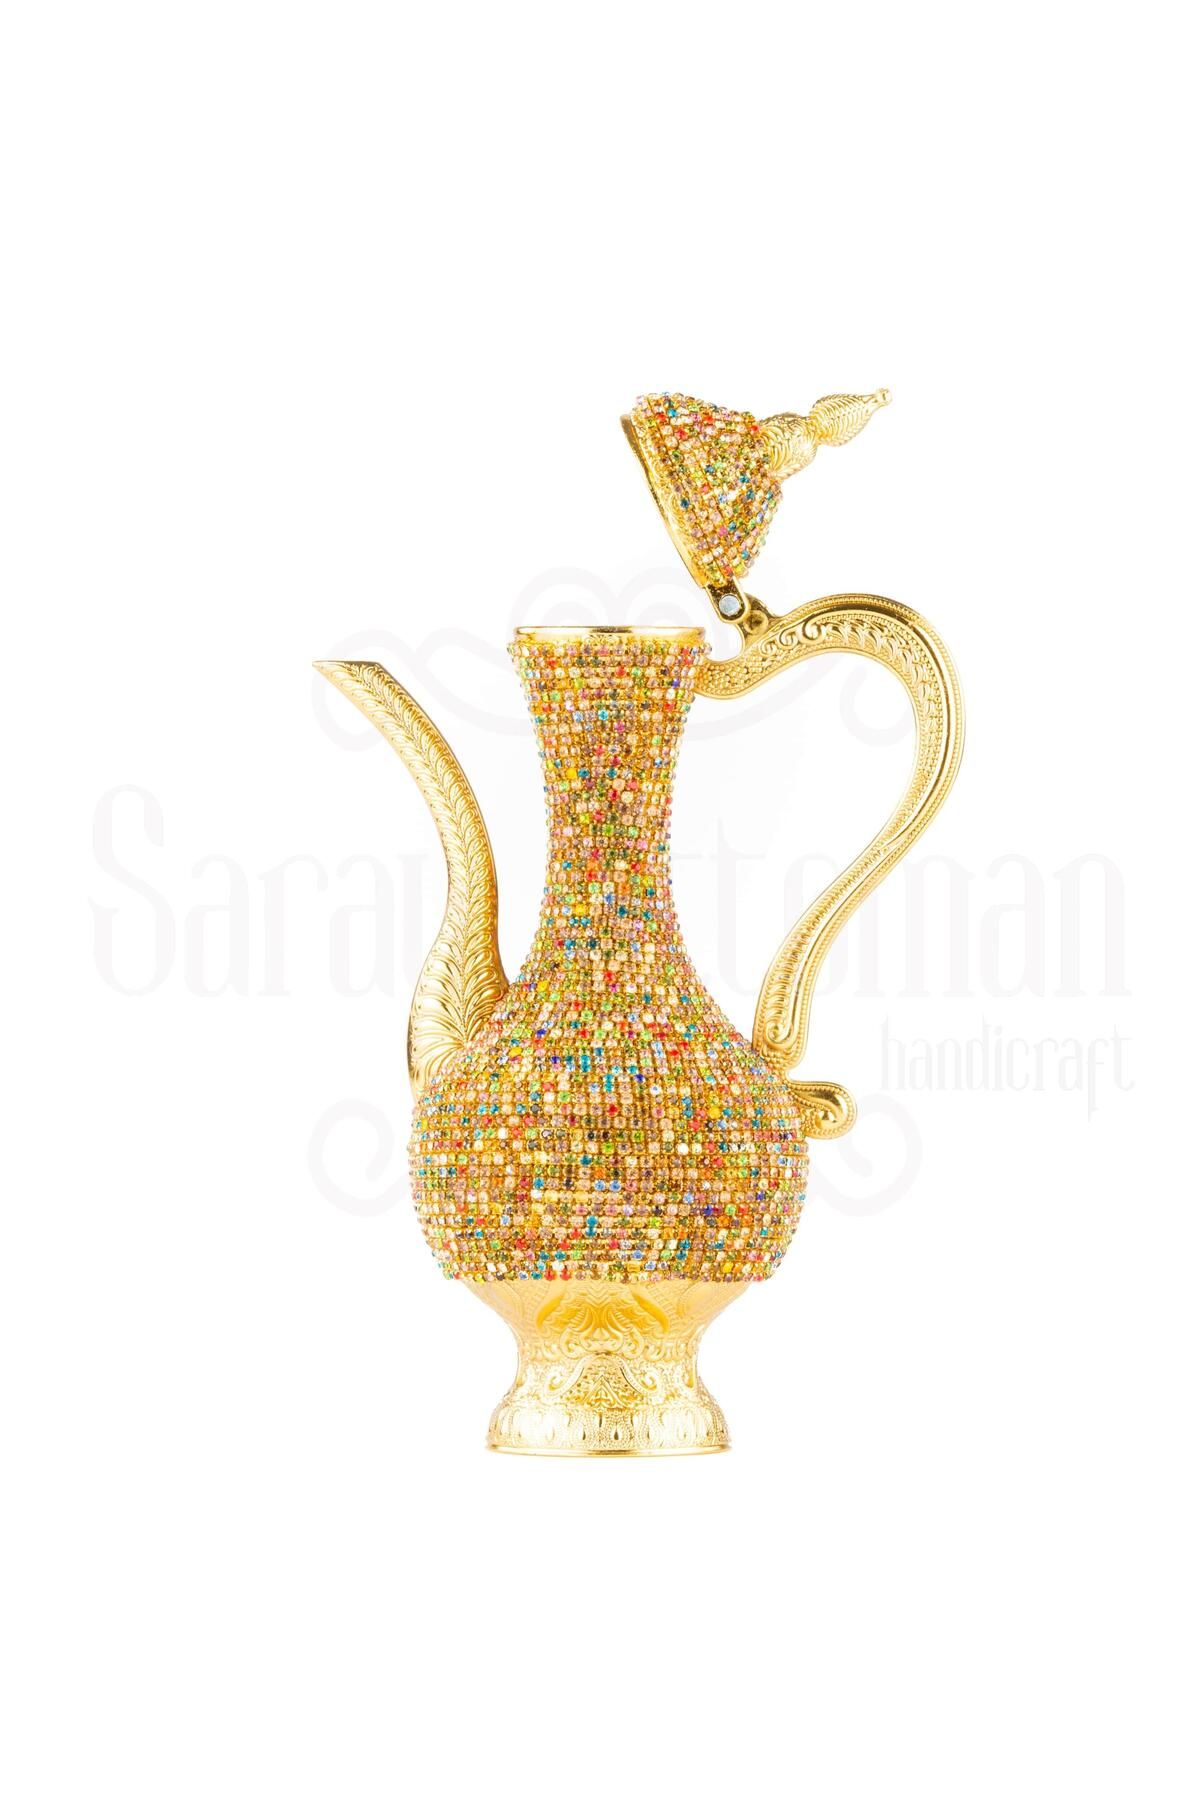 Saray Ottoman Renkli Taşlı Zemzem Ibrik Sürahisi Payitaht Büyük Altın